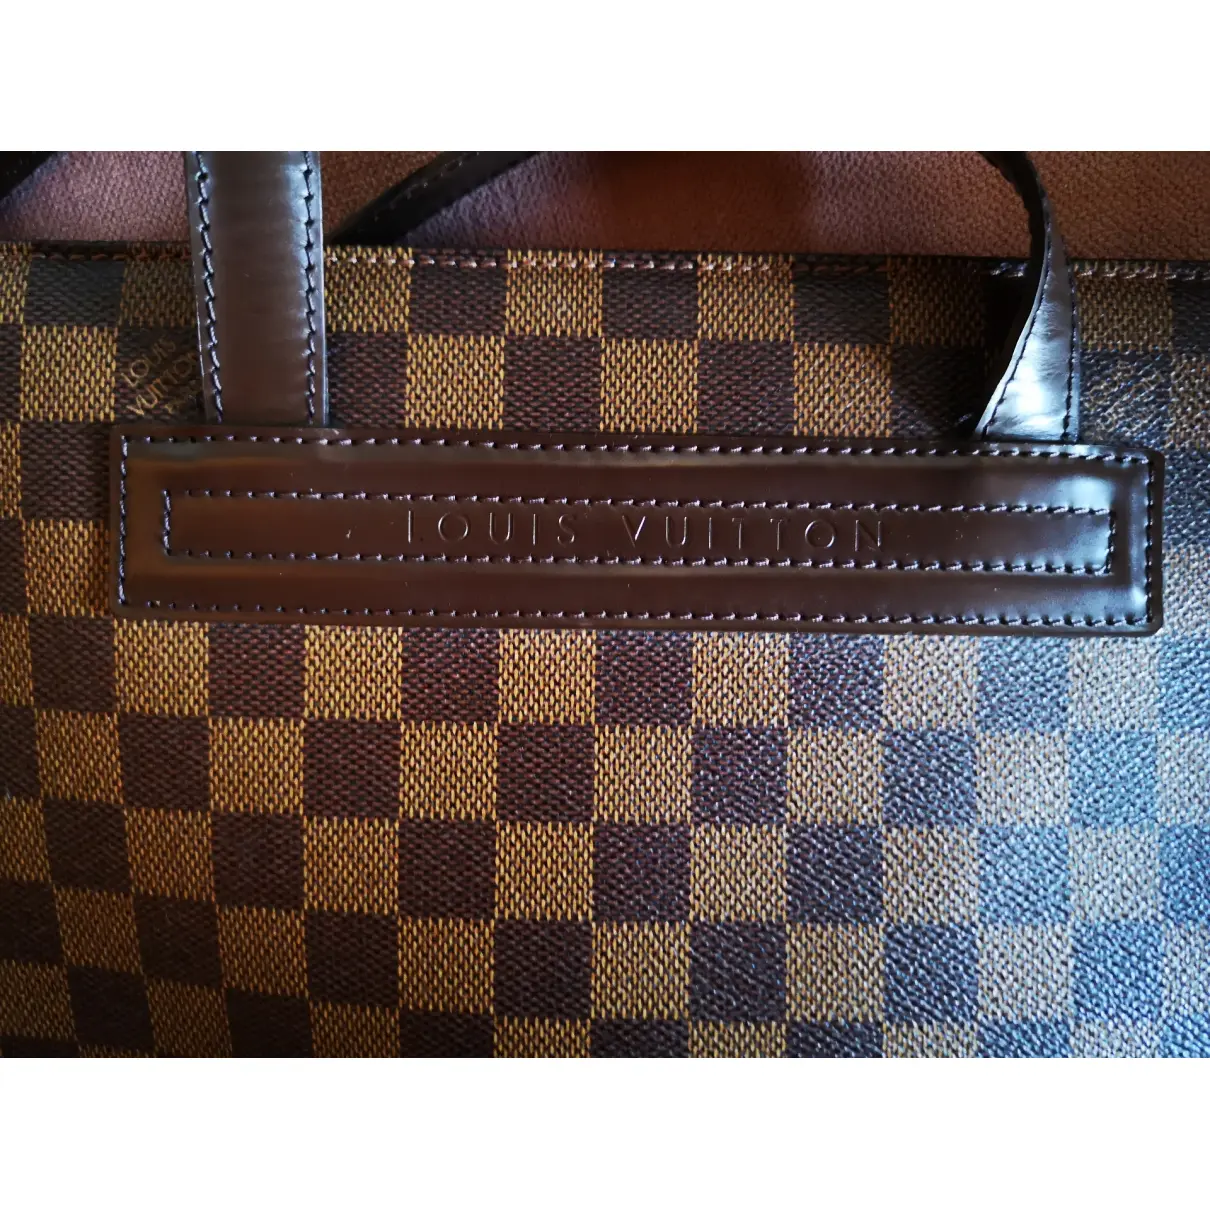 Parioli cloth handbag Louis Vuitton